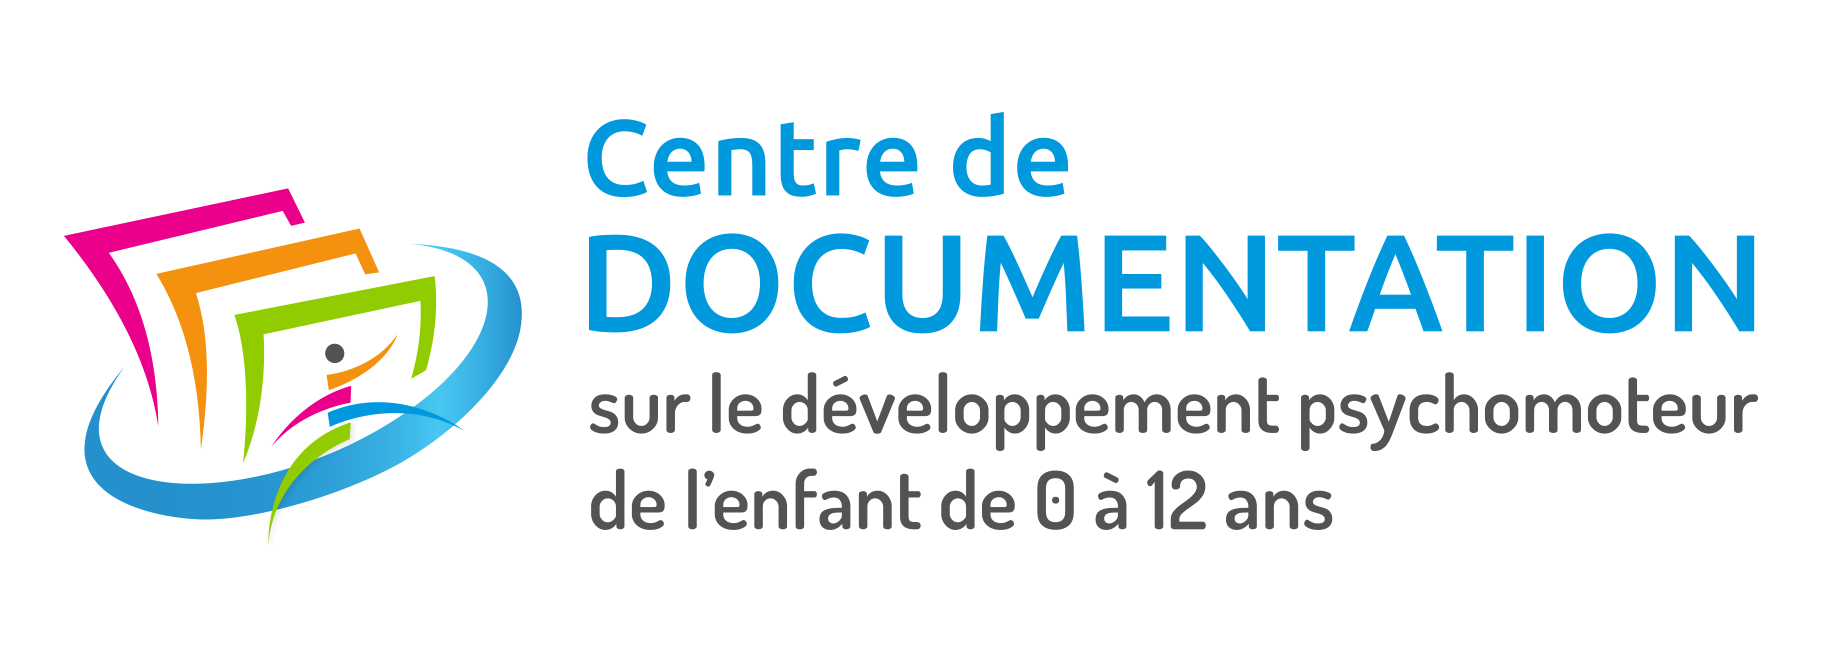 Logo Centre de documentation sur le développement psychomoteur de l'enfant de 0 à 12 ans